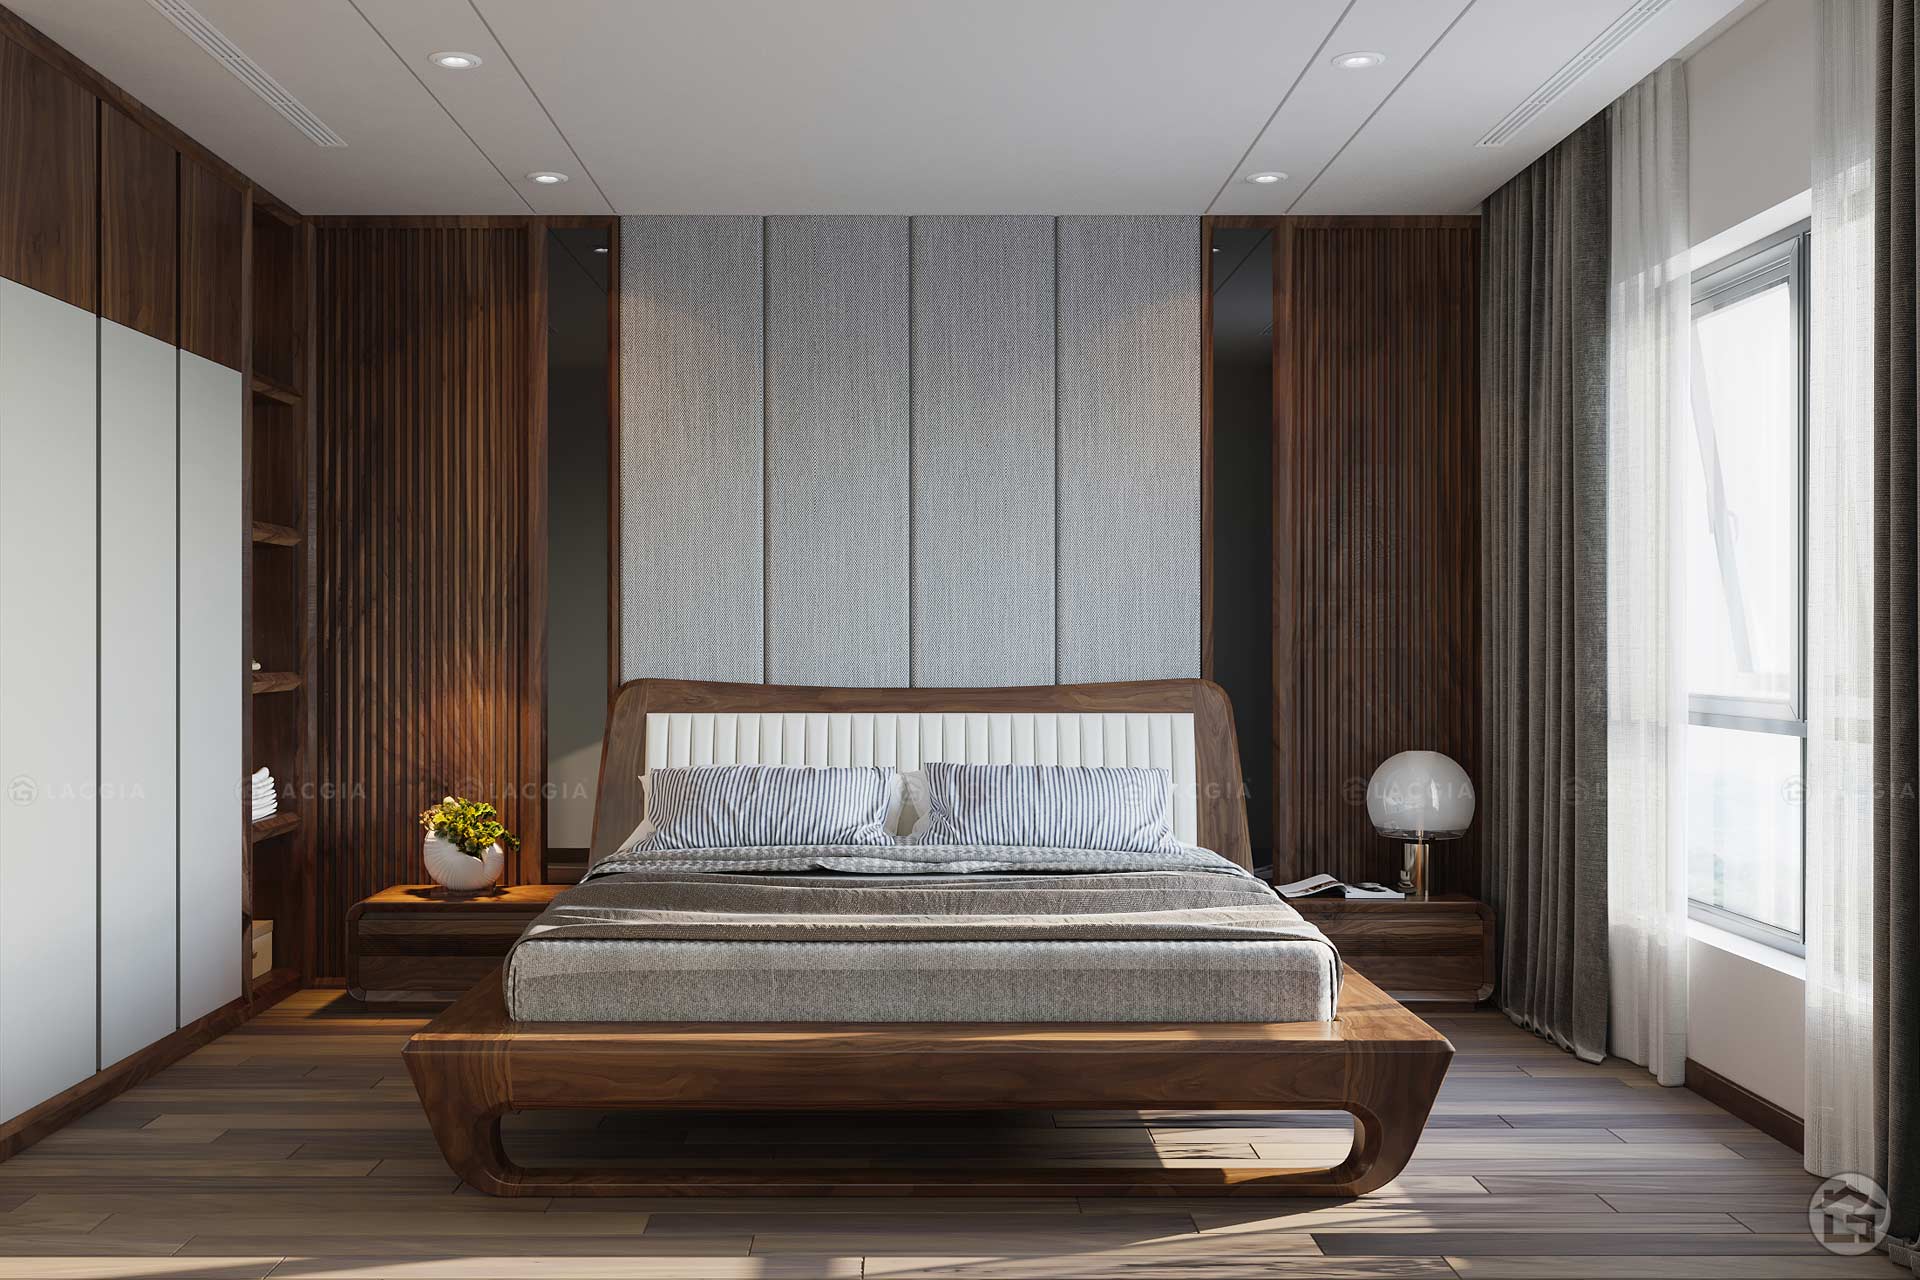 Sản xuất giường ngủ gỗ công nghiệp đẹp hiện đại  Cavanli  Nội thất phong  cách hiện đại bàn trà sofa kệ tivi bàn ăn giường